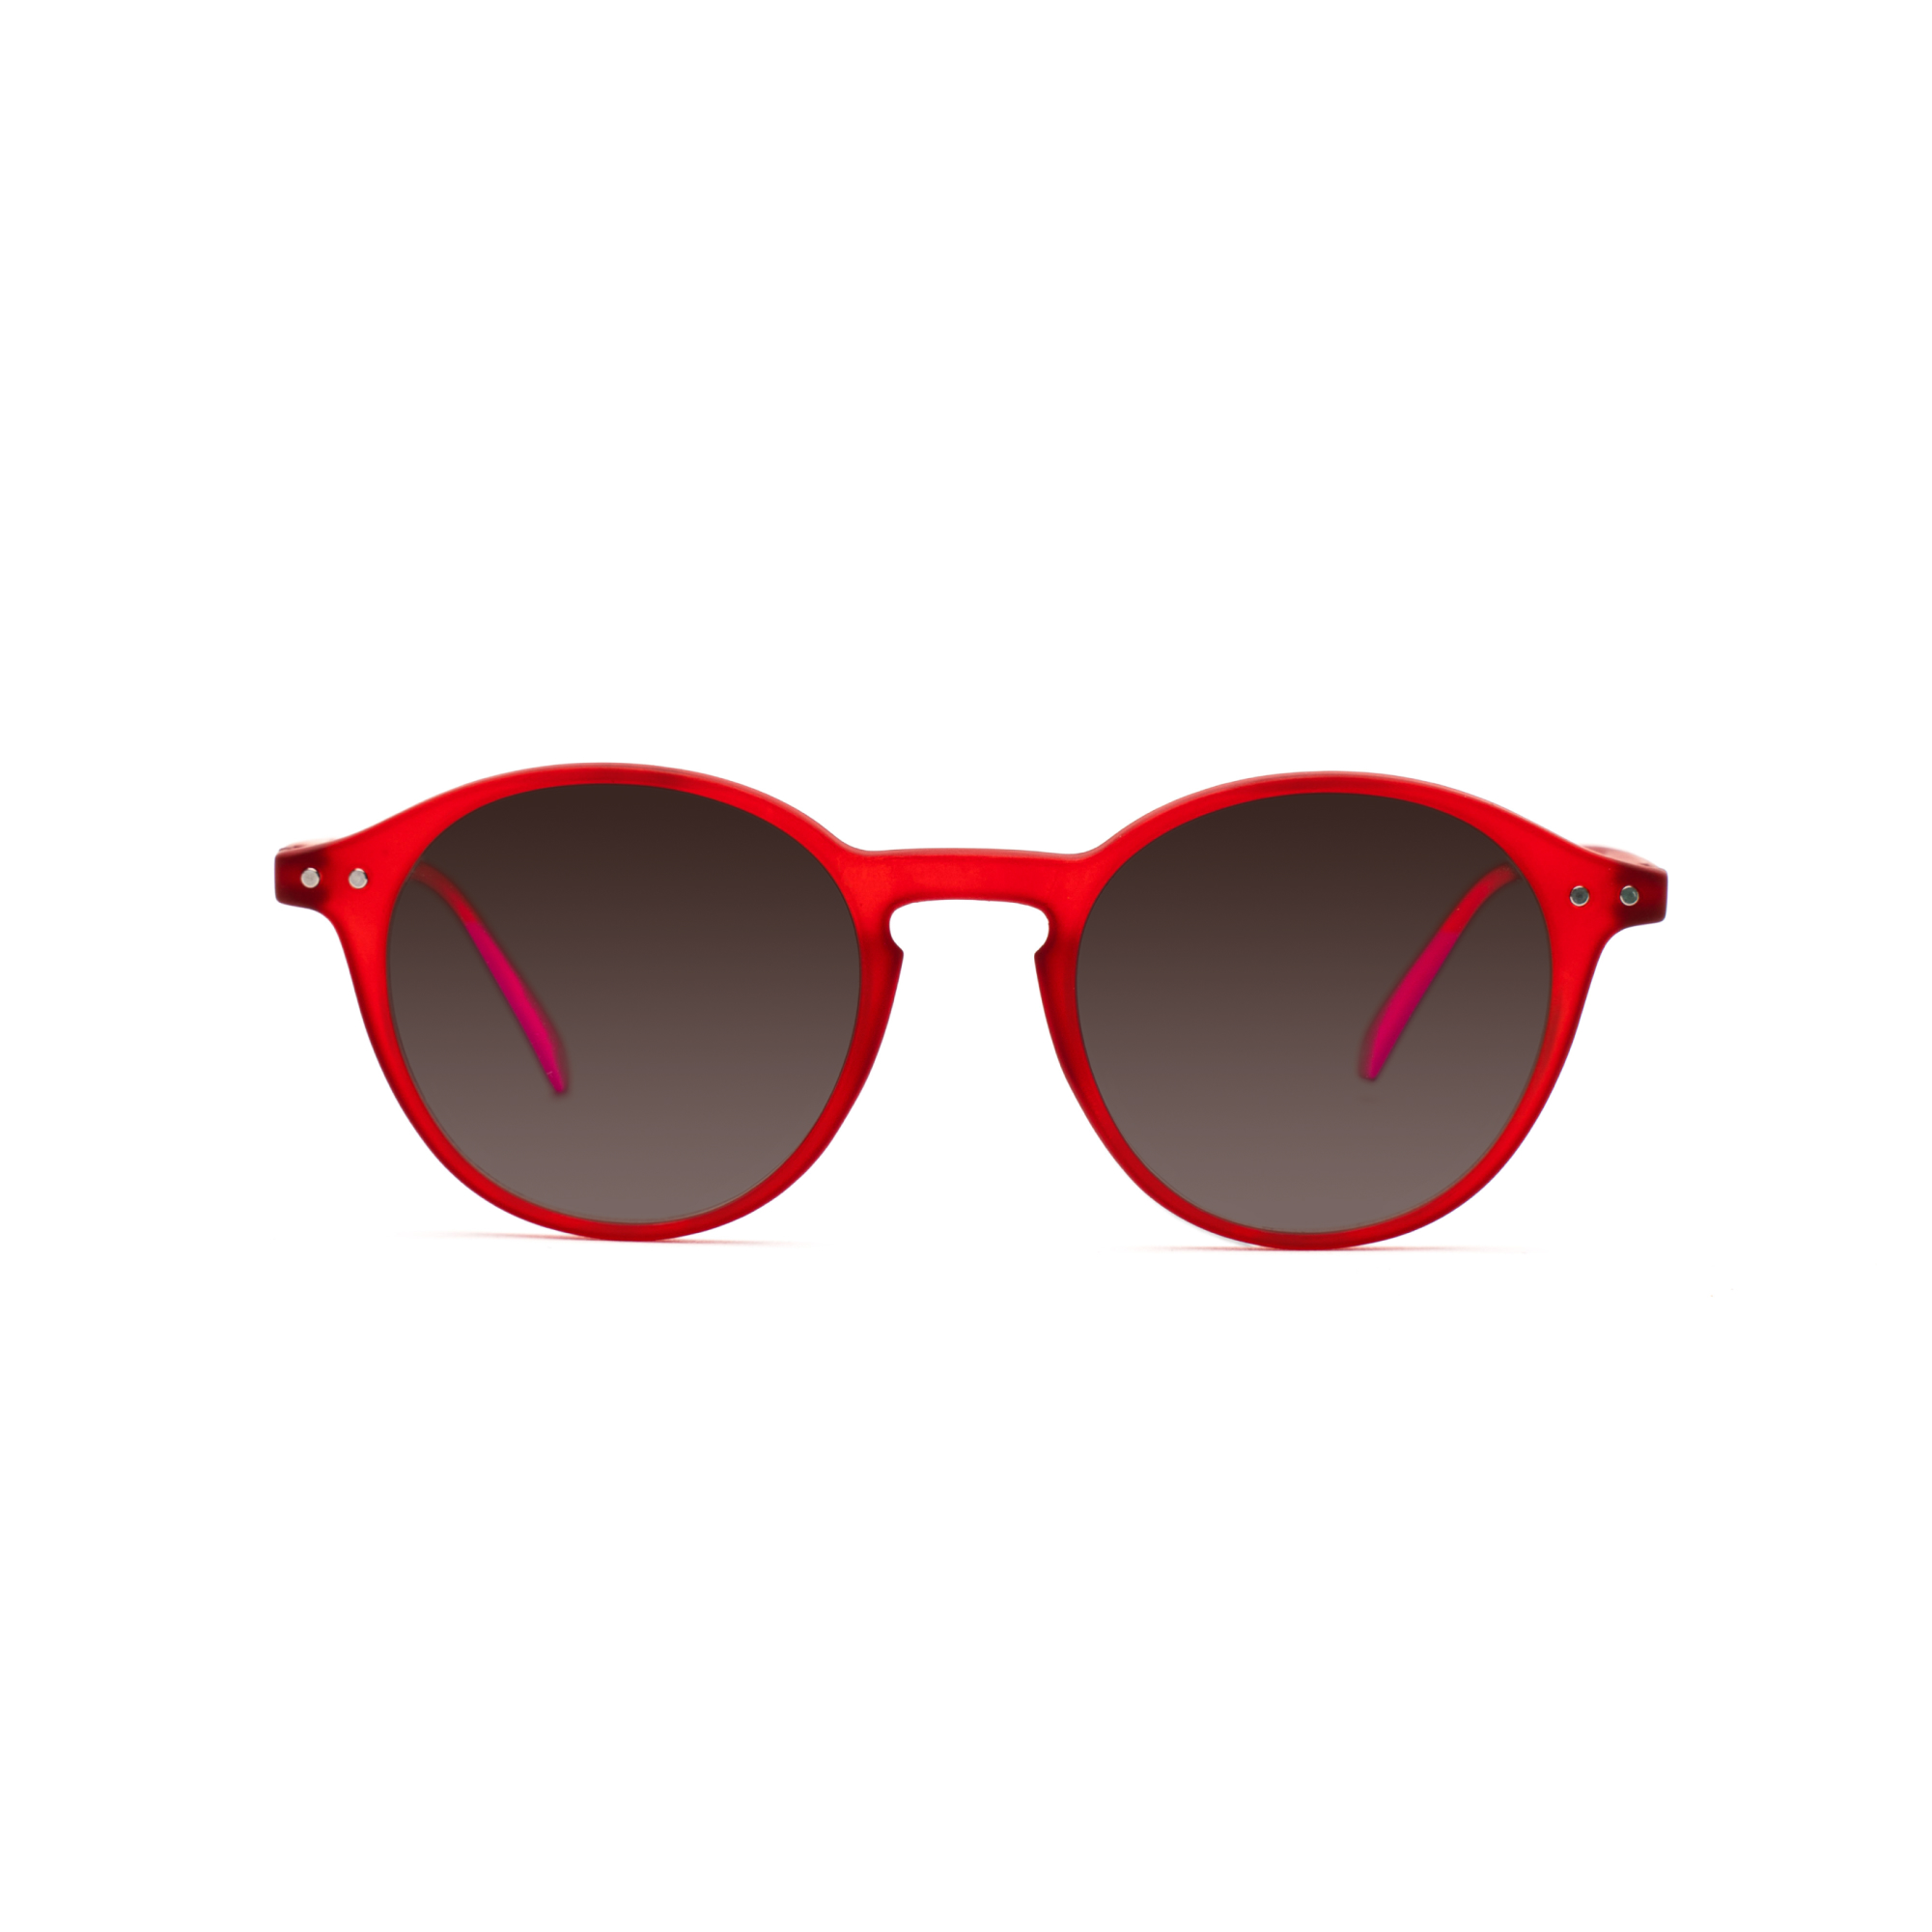 men's sunglasses – Luca UVSUN m - Red